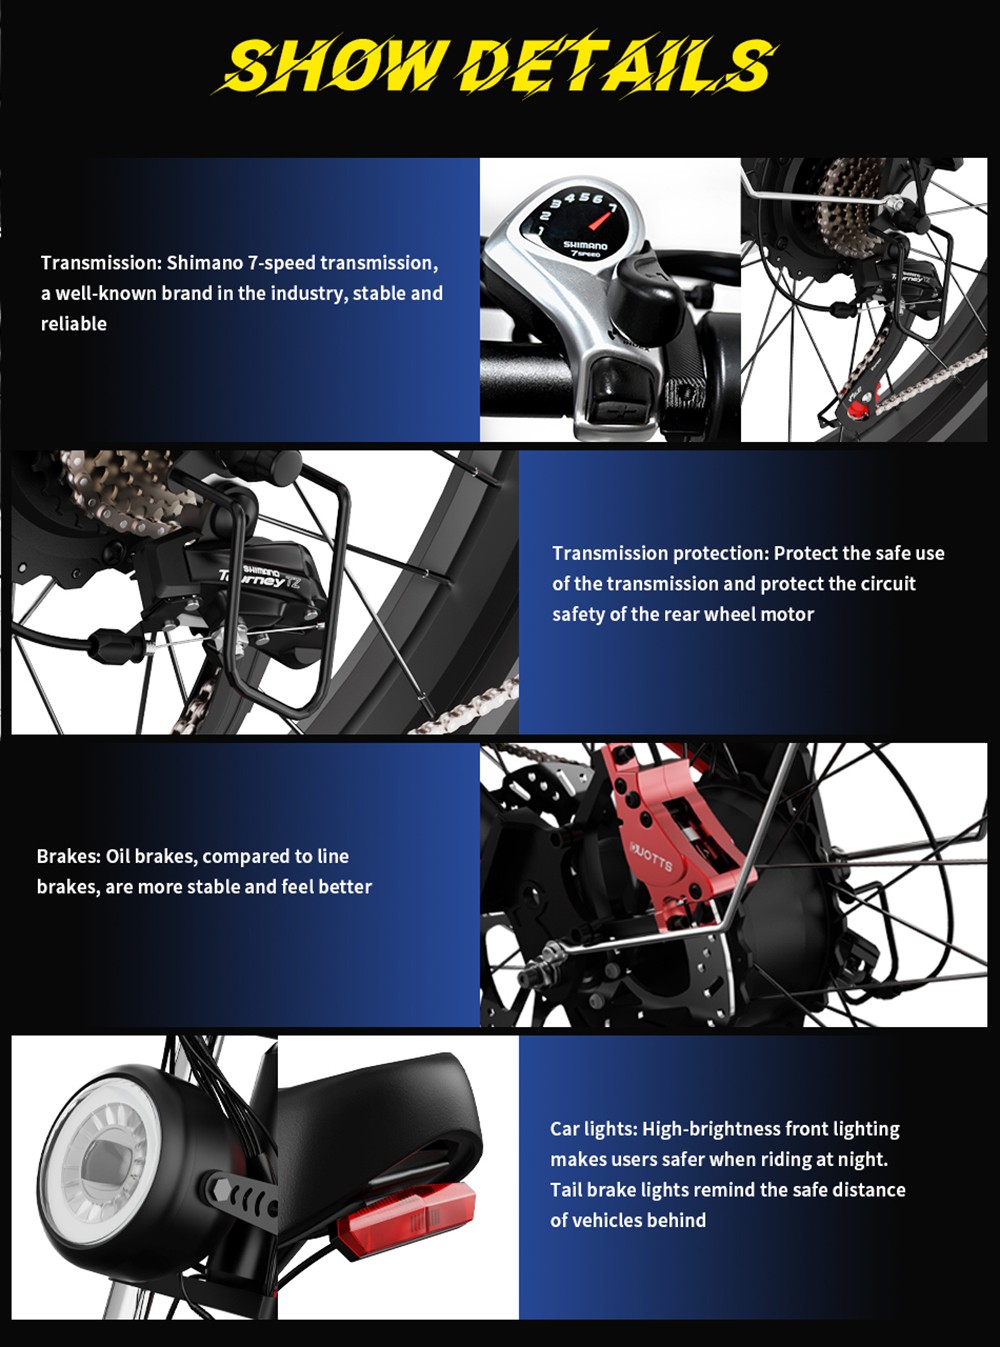 Vélo électrique DUOTTS N26, moteurs 750 W x 2, vitesse maximale de 55 km/h, pneus gonflables 26 x 4.0', batterie Samsung 48 V 20 Ah, autonomie de 120 à 150 km, Shimano 7 vitesses, charge maximale de 200 kg, noir